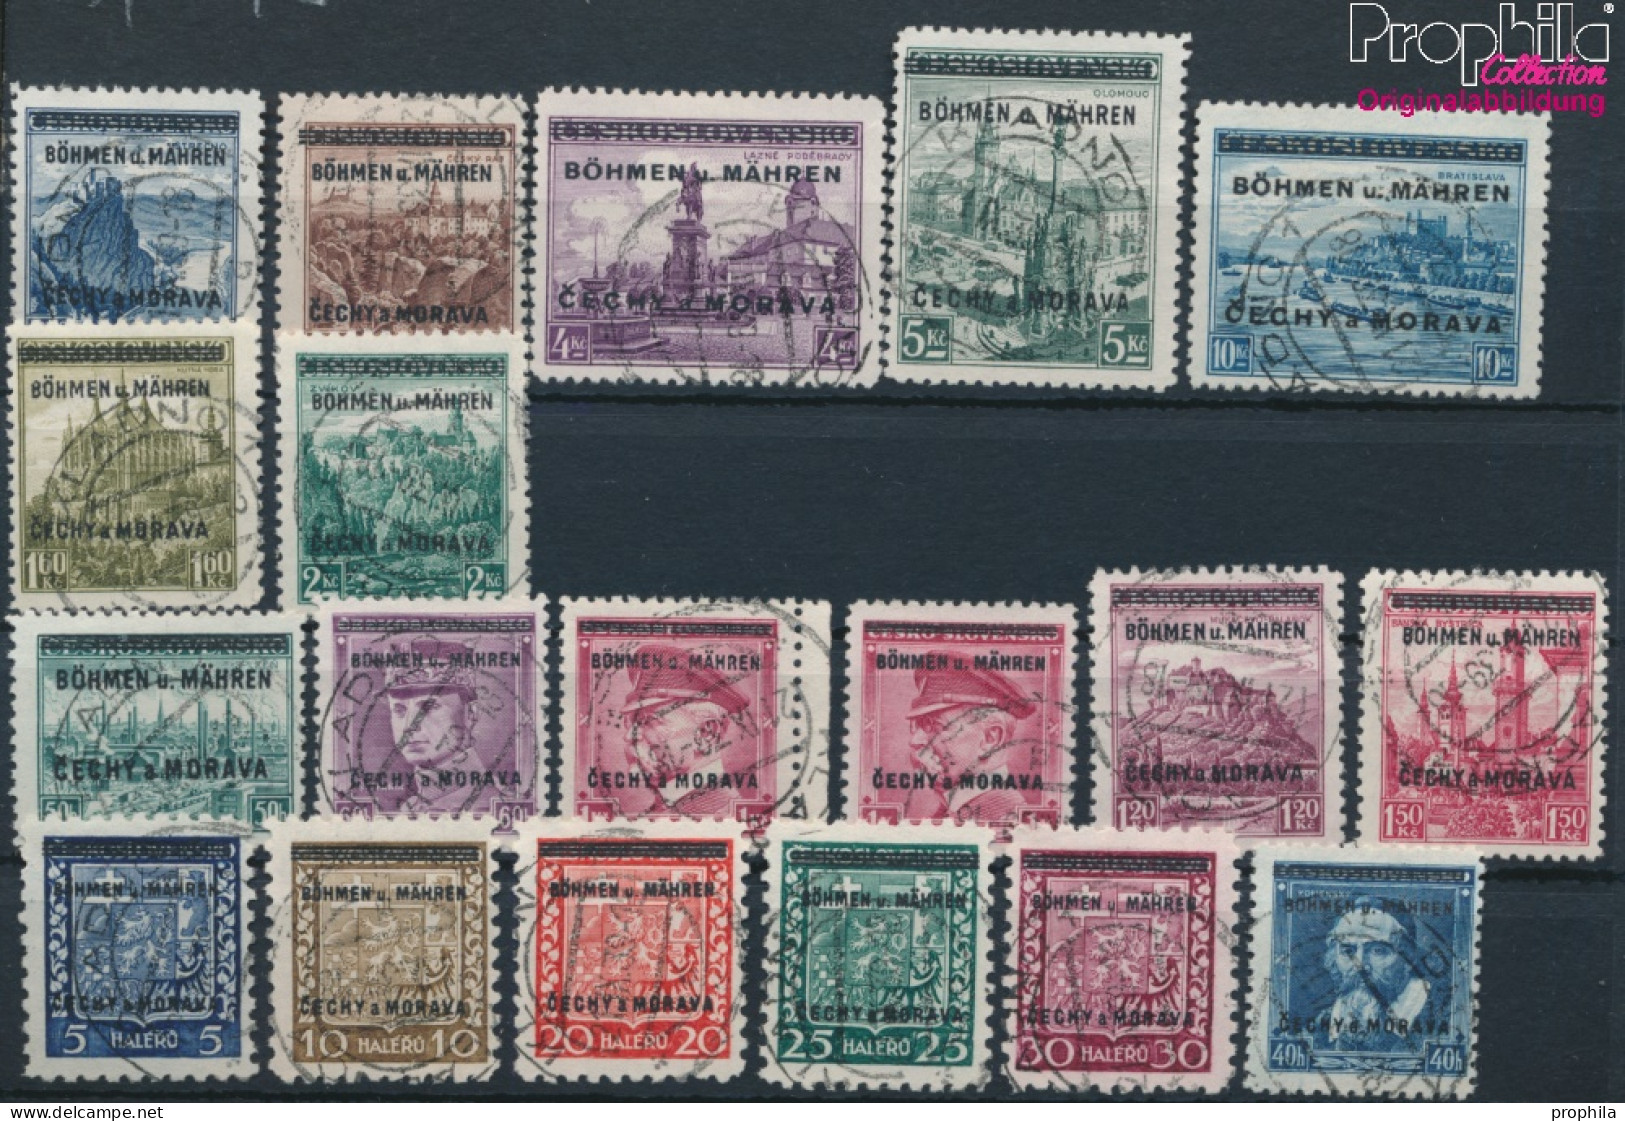 Böhmen Und Mähren 1-19 (kompl.Ausg.) Stempel Nicht Prüfbar Gestempelt 1939 Aufdruckausgabe (10221150 - Used Stamps